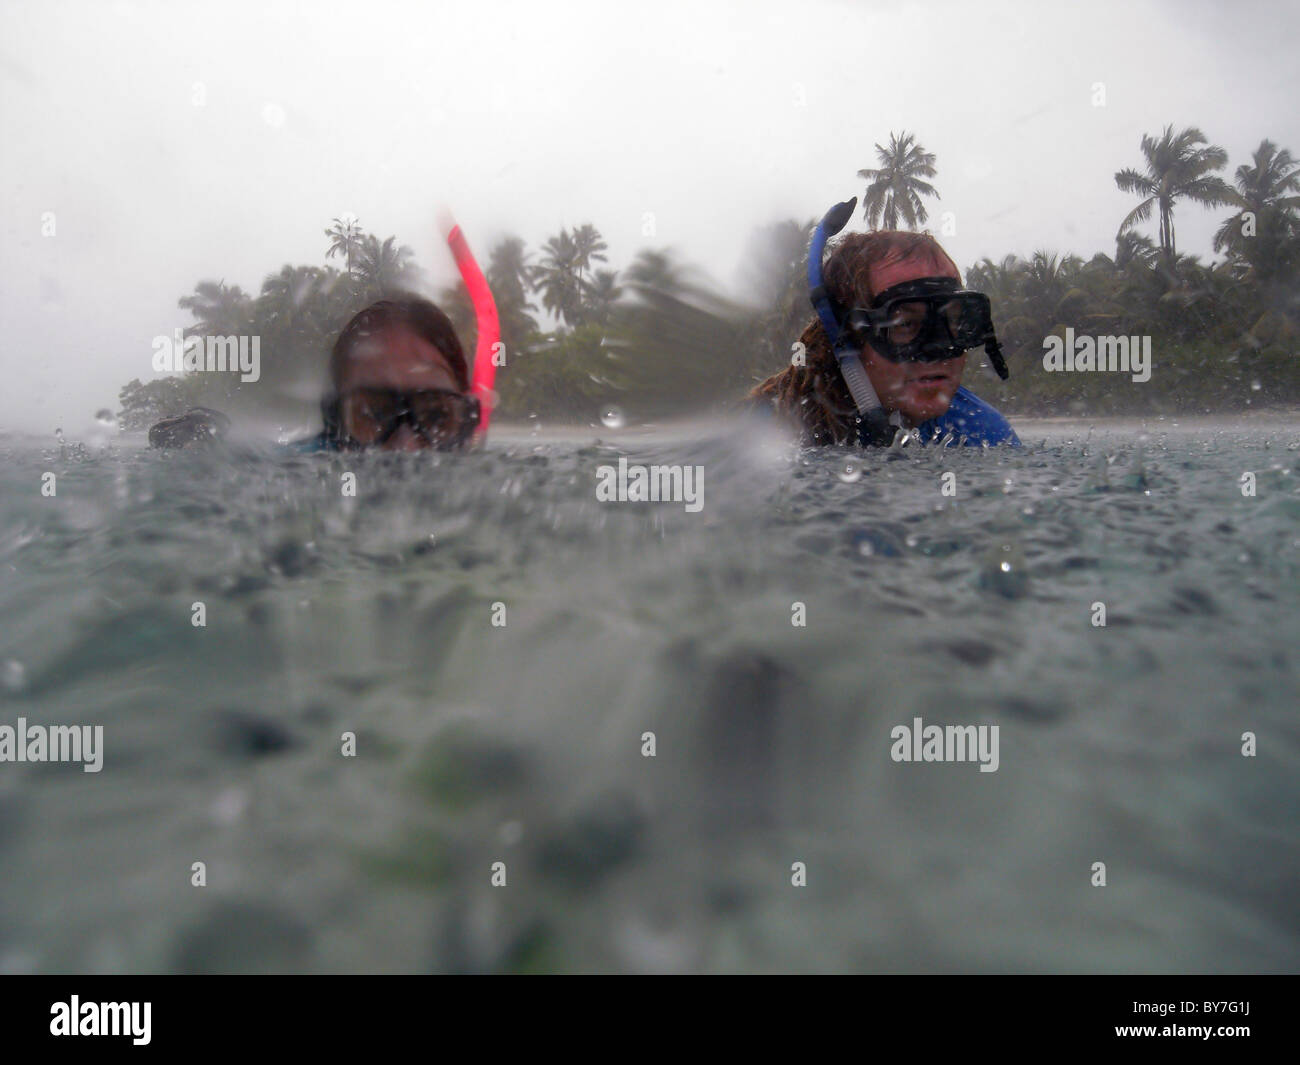 Plongée avec tuba dans la pluie, Cocos Keeling, atoll de l'Océan Indien. Pas de monsieur Banque D'Images